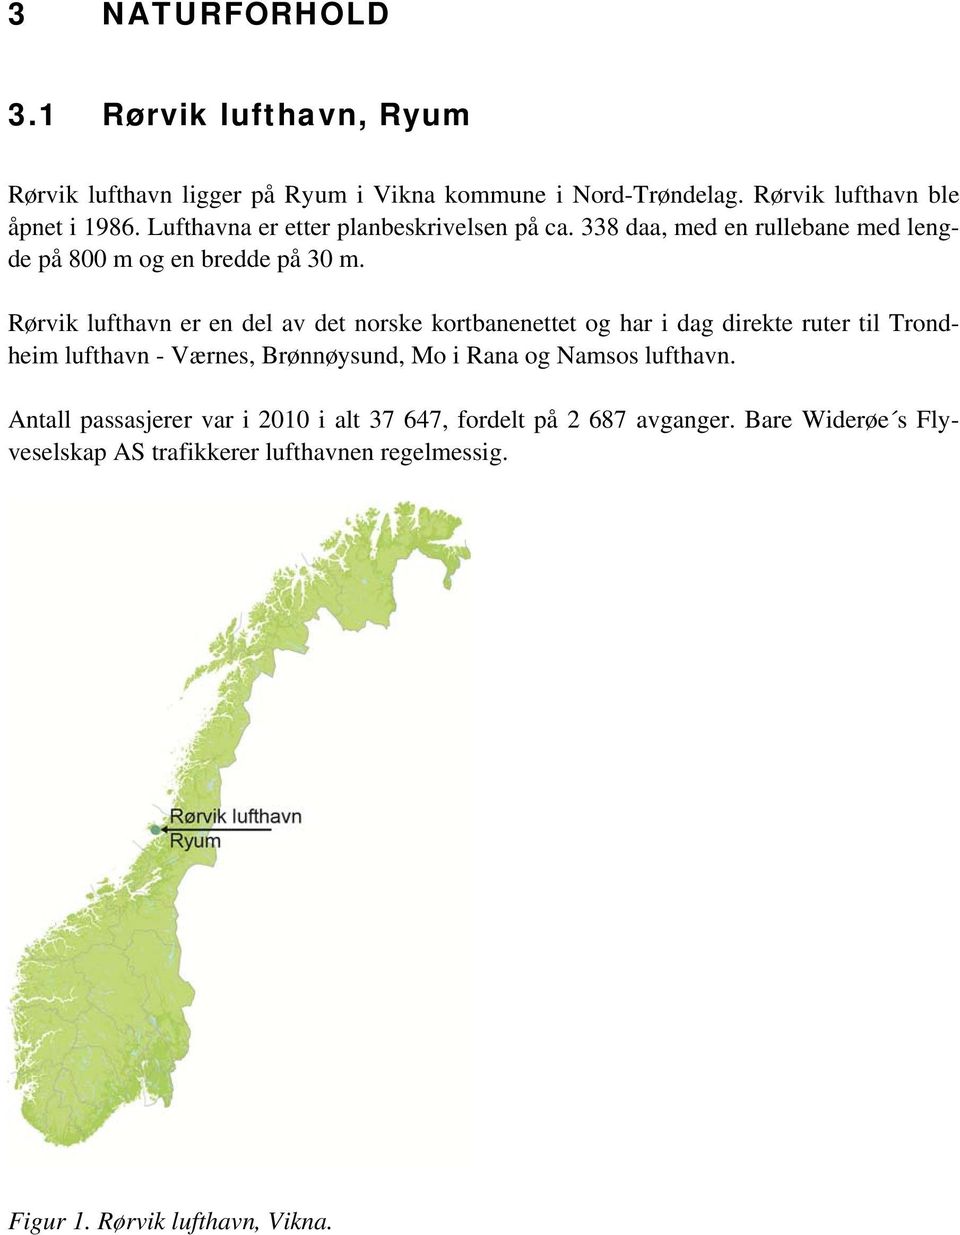 Rørvik lufthavn er en del av det norske kortbanenettet og har i dag direkte ruter til Trondheim lufthavn - Værnes, Brønnøysund, Mo i Rana og